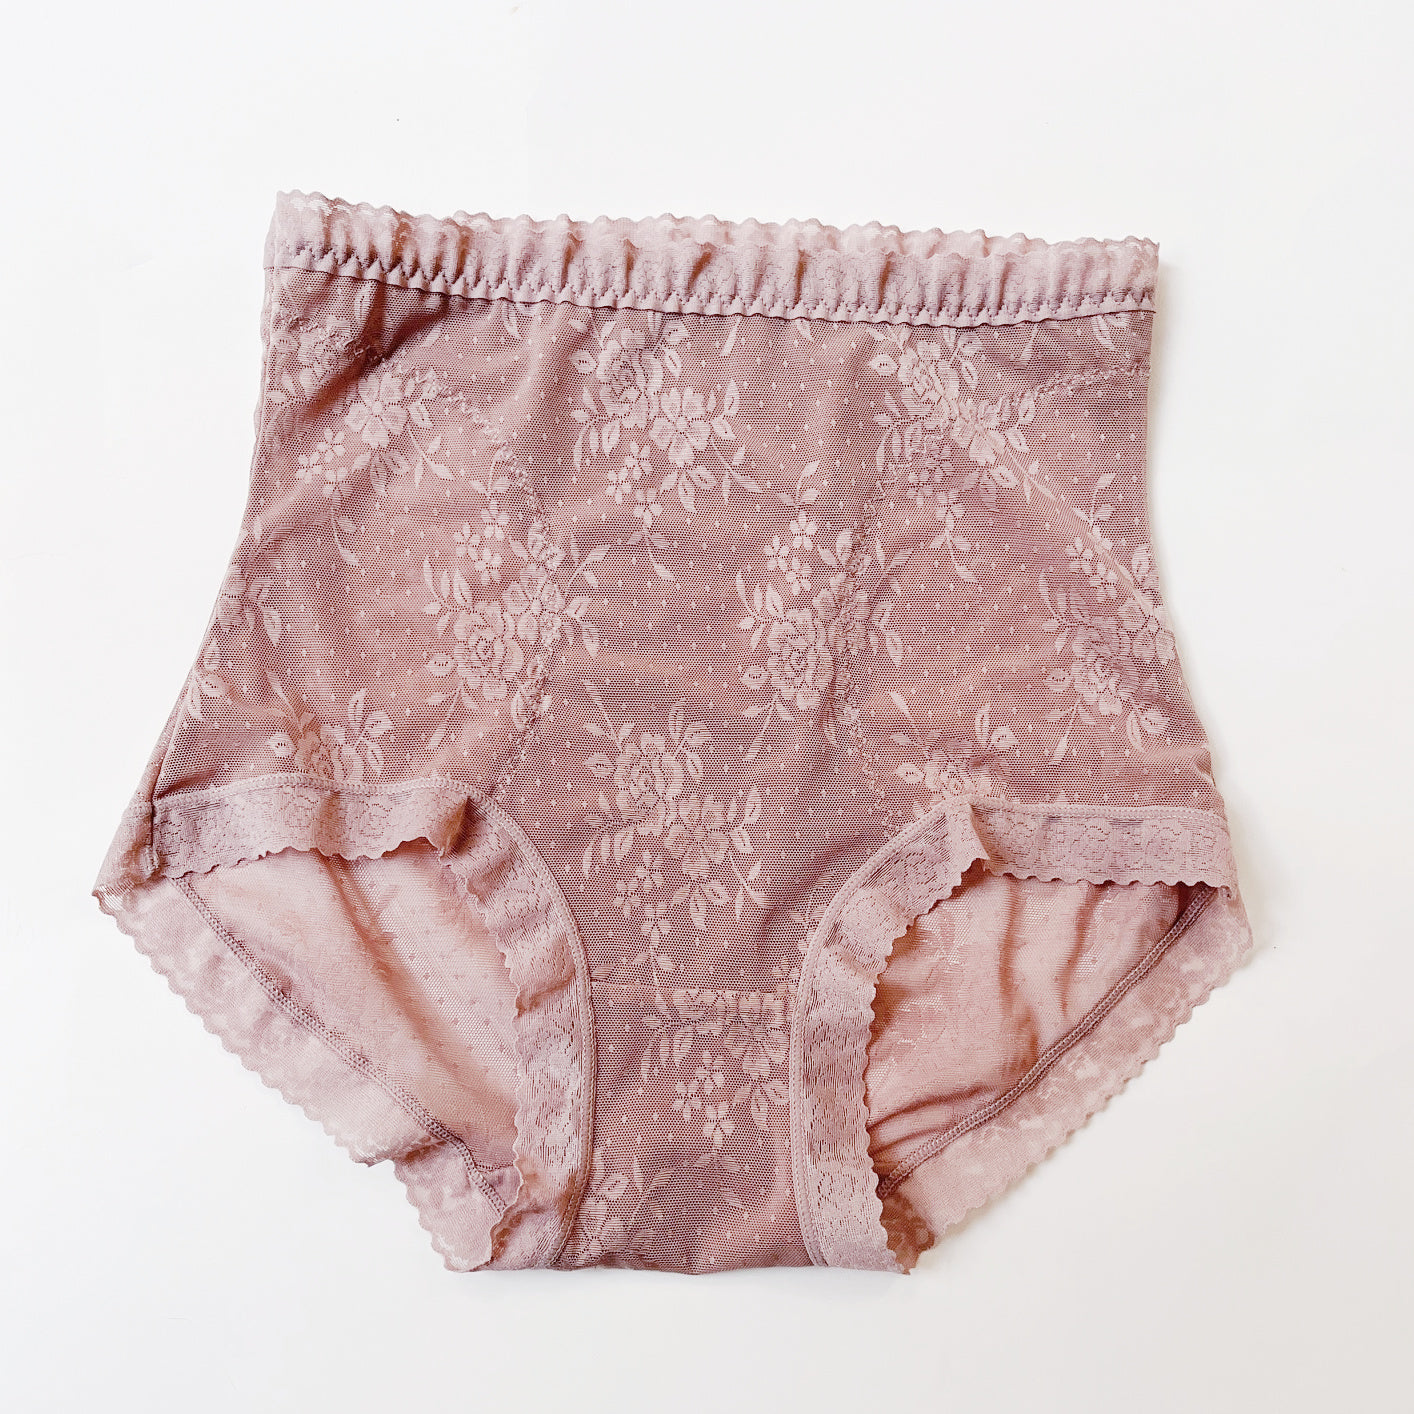 EHQJNJ Lace Panties for Women Lace Underwear for Women Underwear